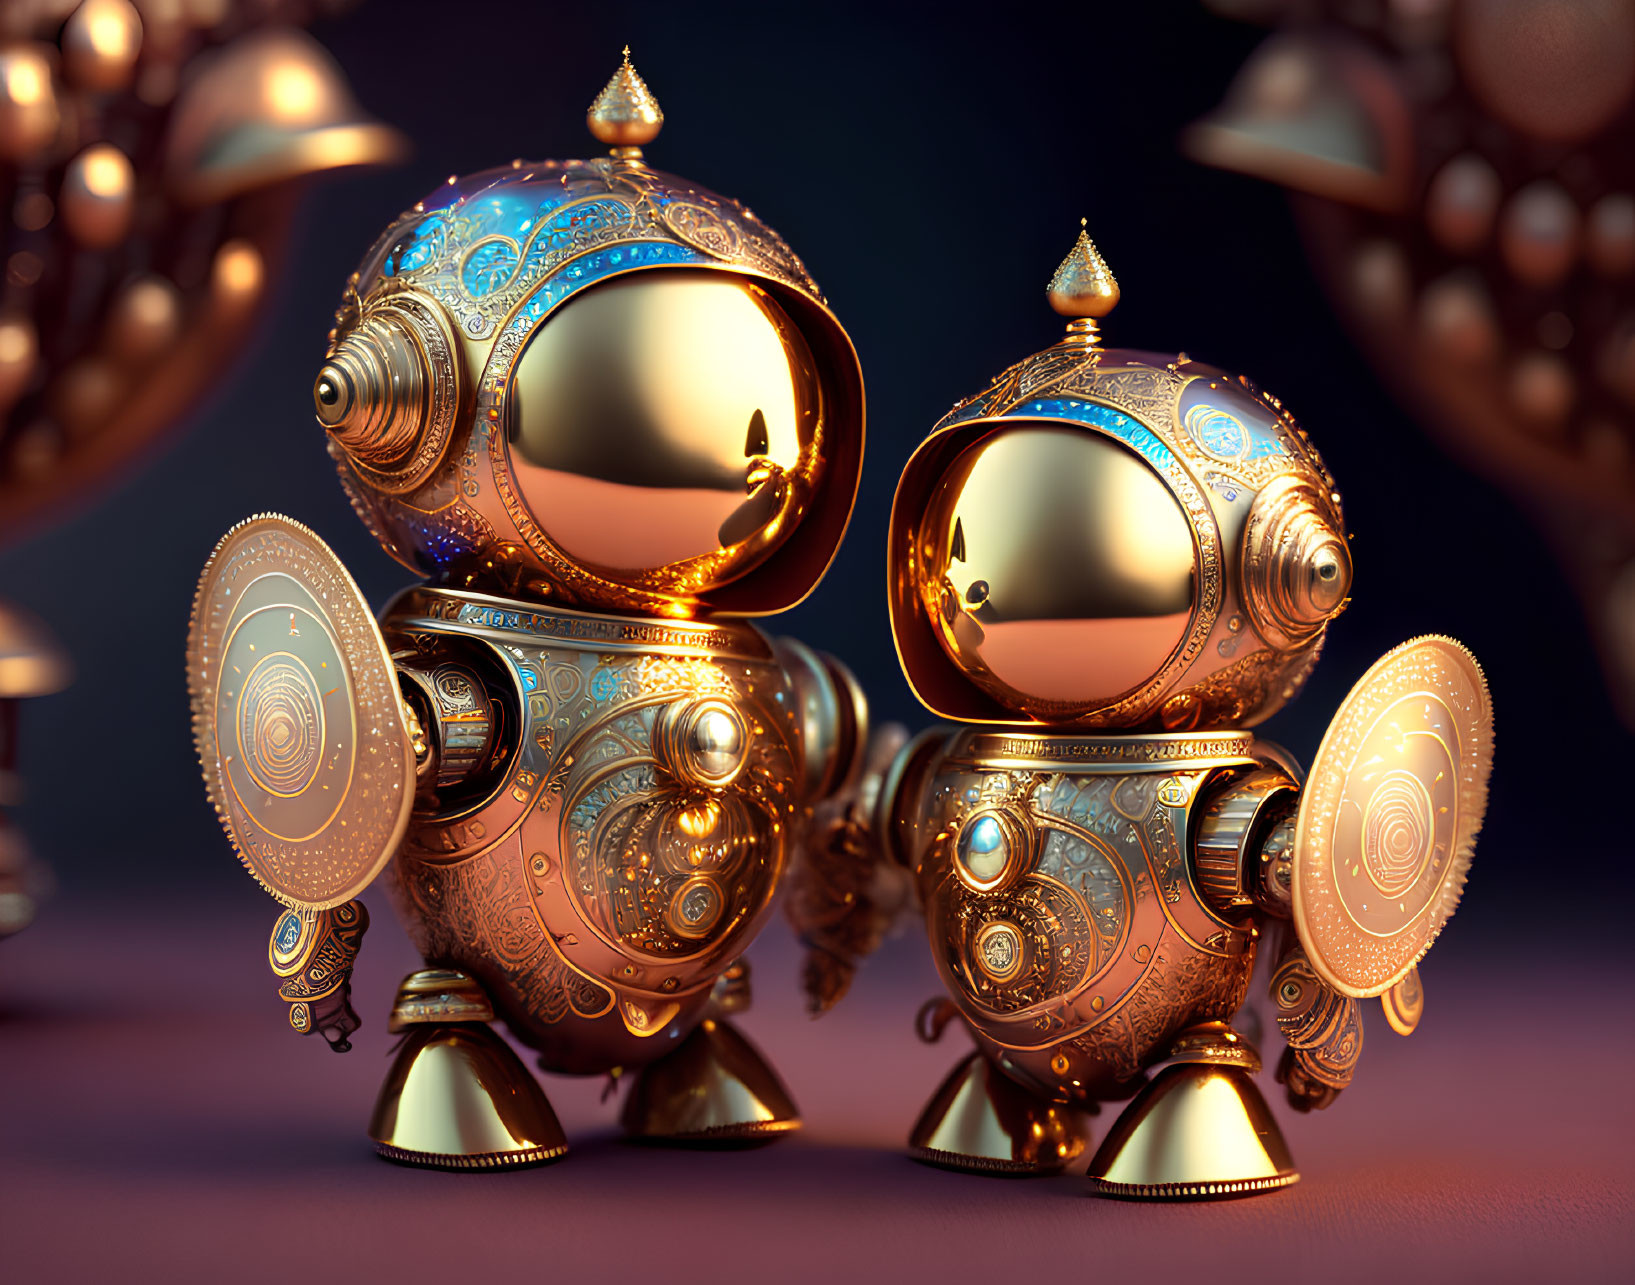 Golden Steampunk Robots with Shields on Dark Background